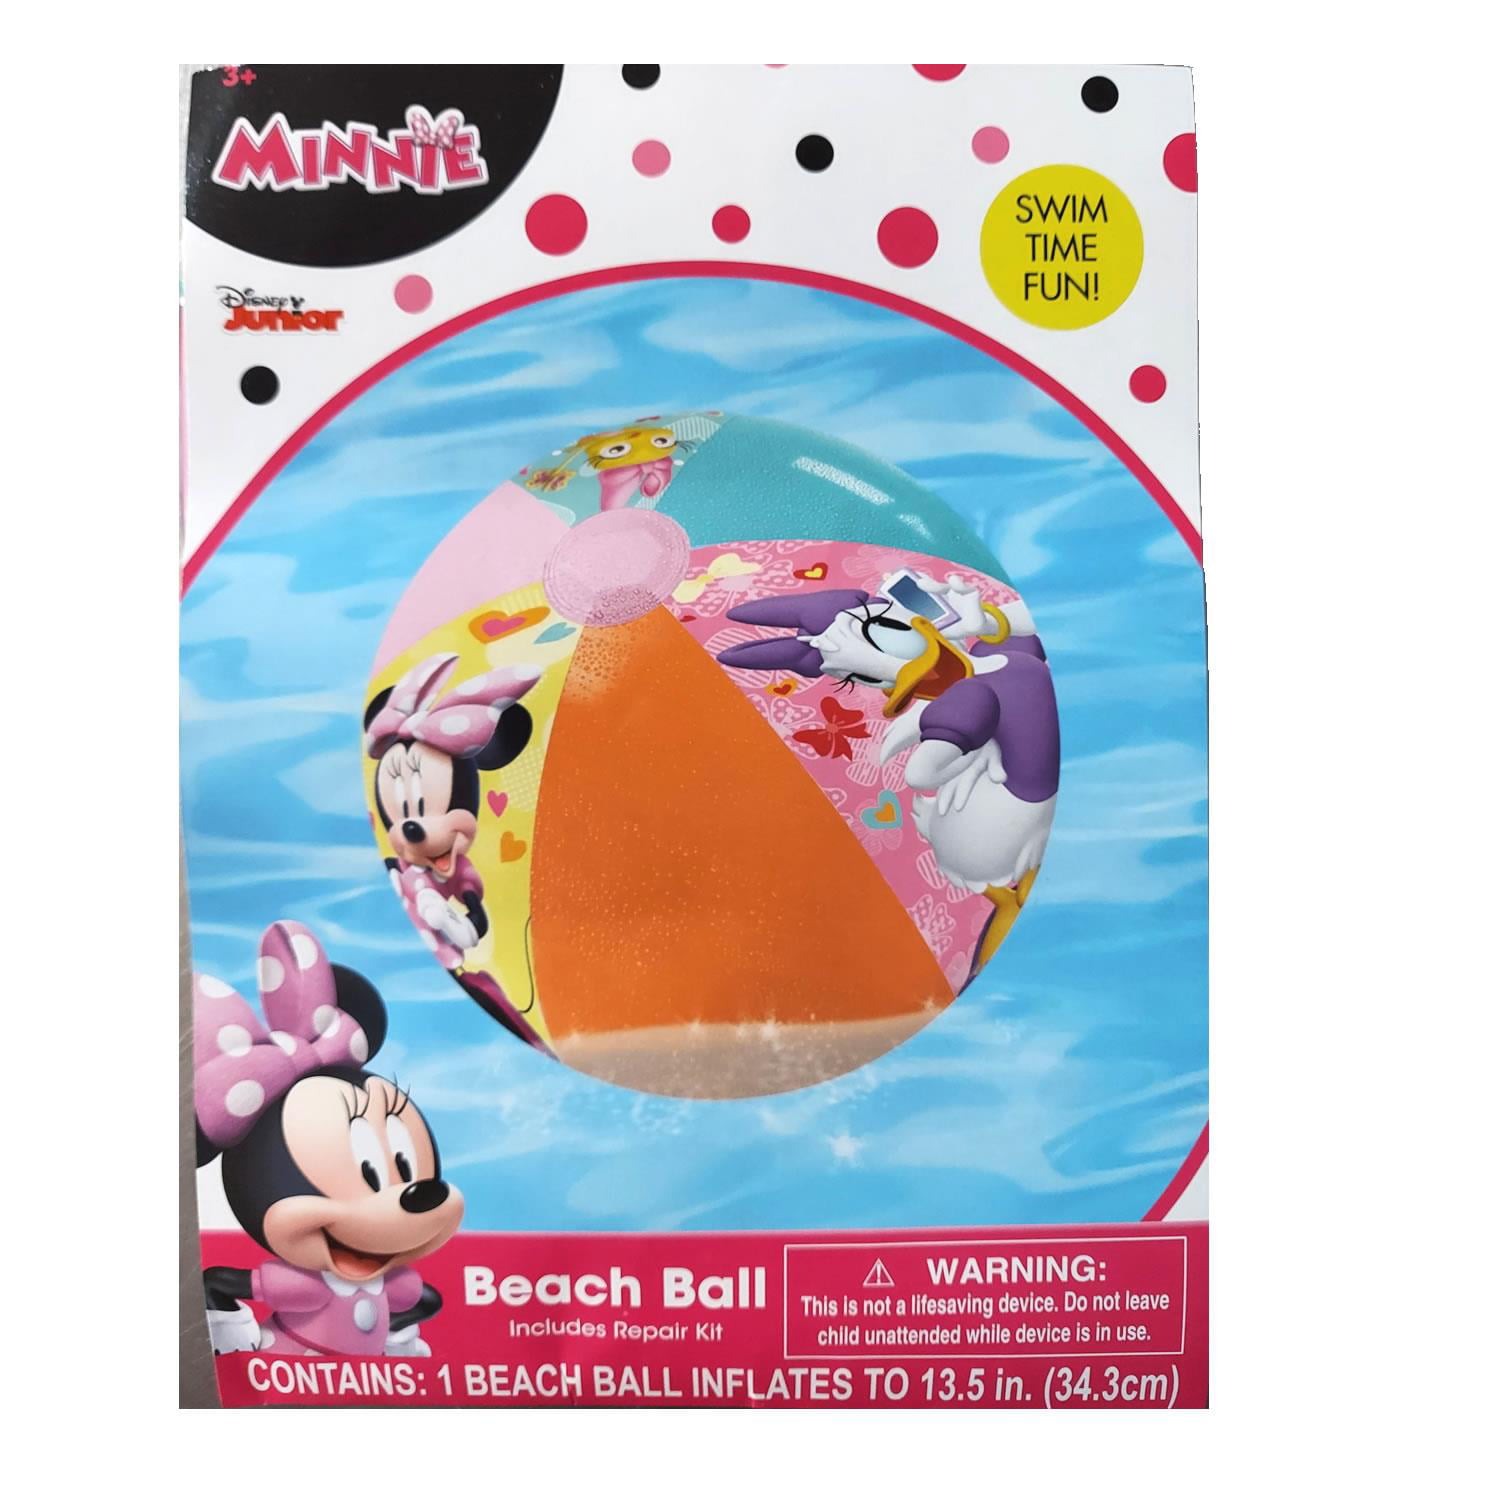 Spider Man Minnie Mouse Toy Story FrozeN Beach Ball Floats Summer Fun Kids 